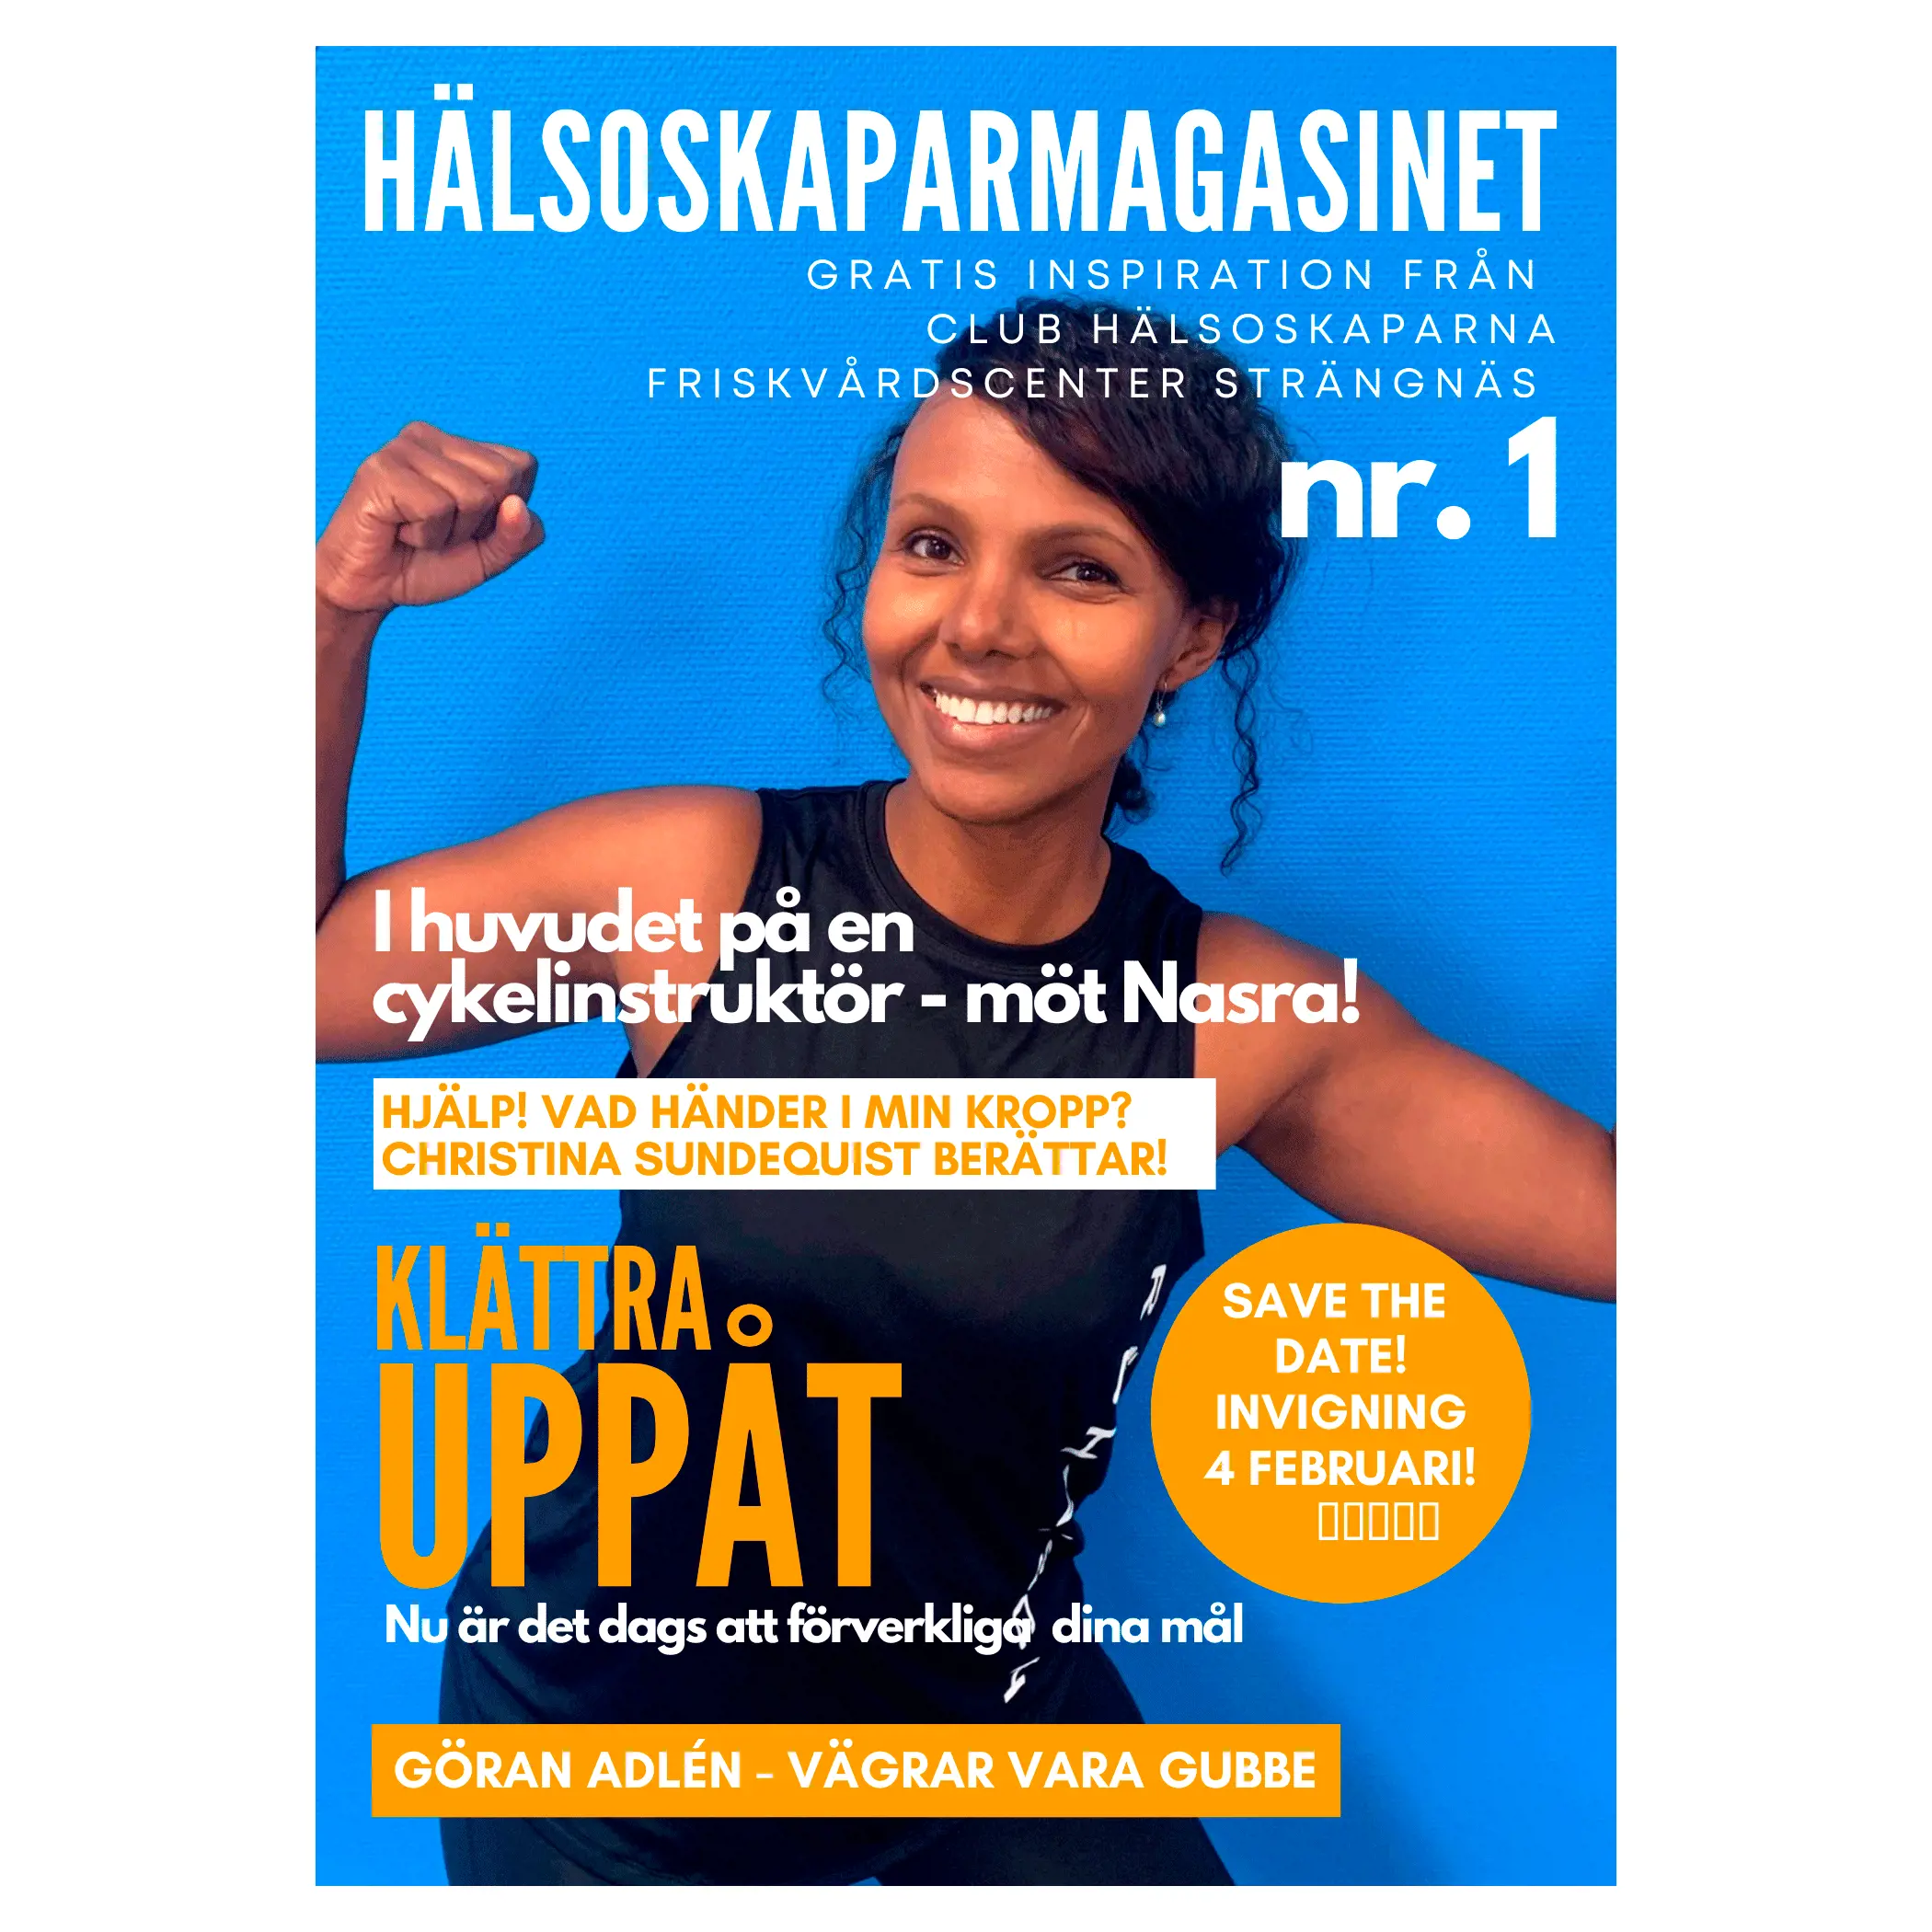 Club hälsoskaparna i Strängnäs bjuder på gratis inspiration för att förbättra din hälsa i Hälsoskaparmagasinet. 